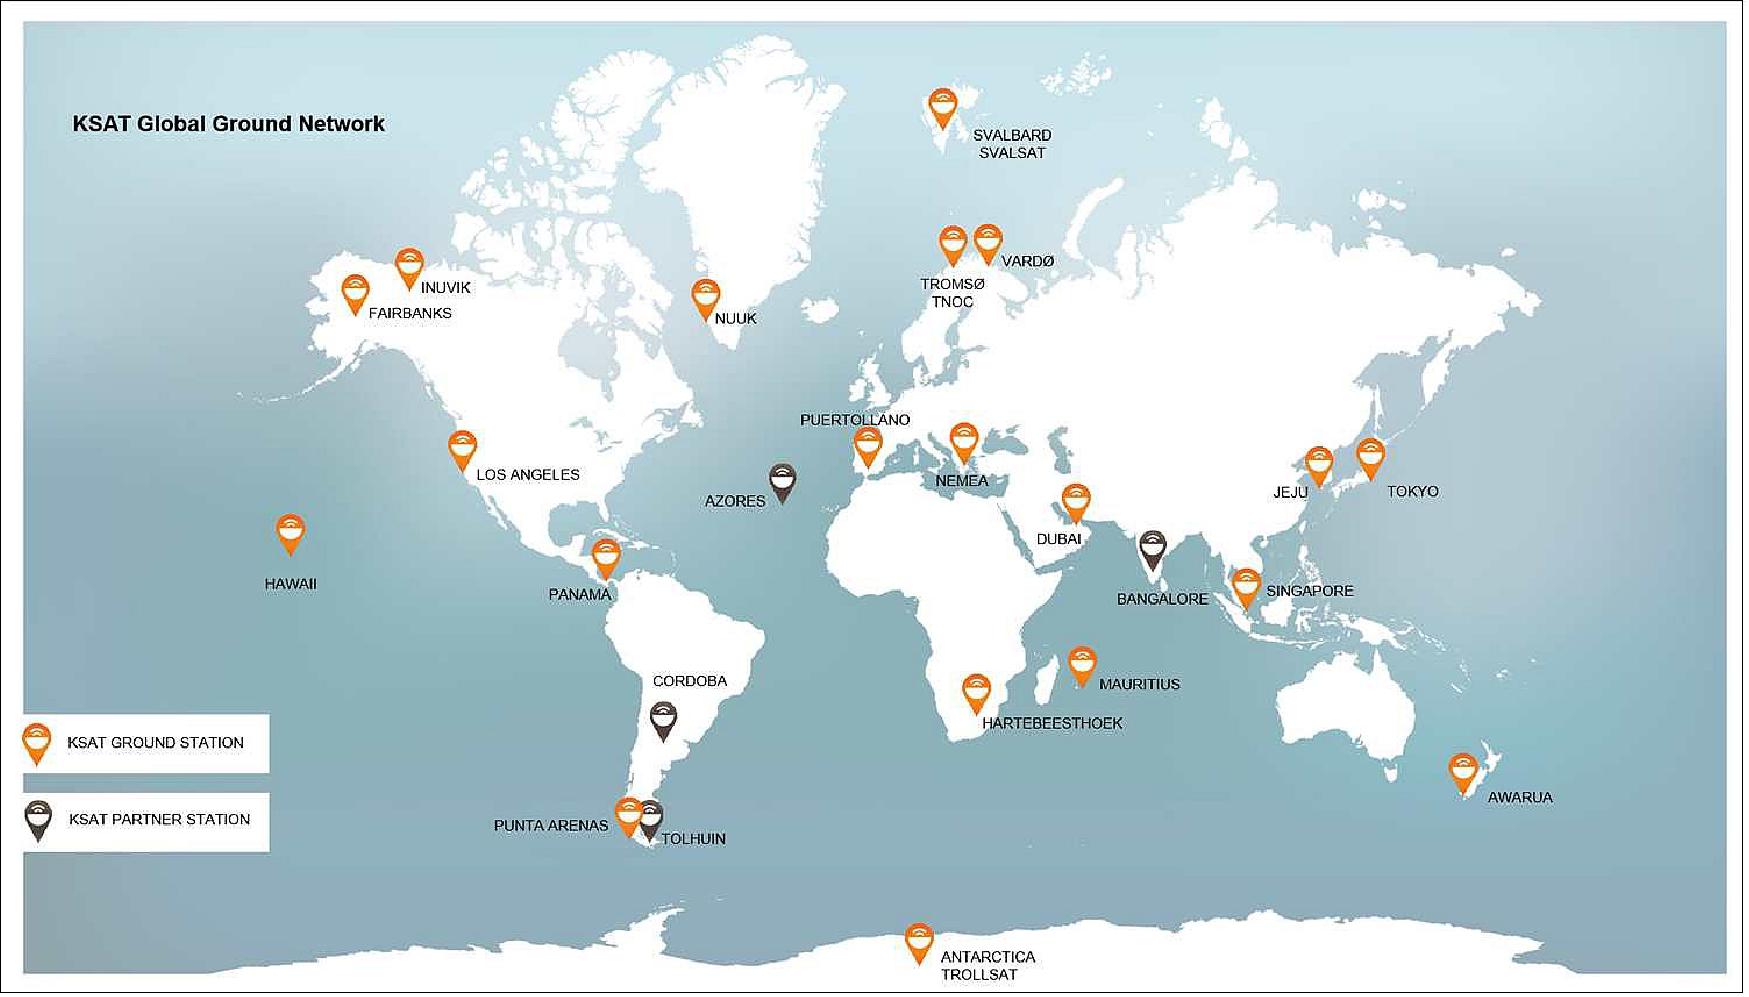 Figure 1: Overview of the KSAT Global Ground Network (image credit: KSAT)